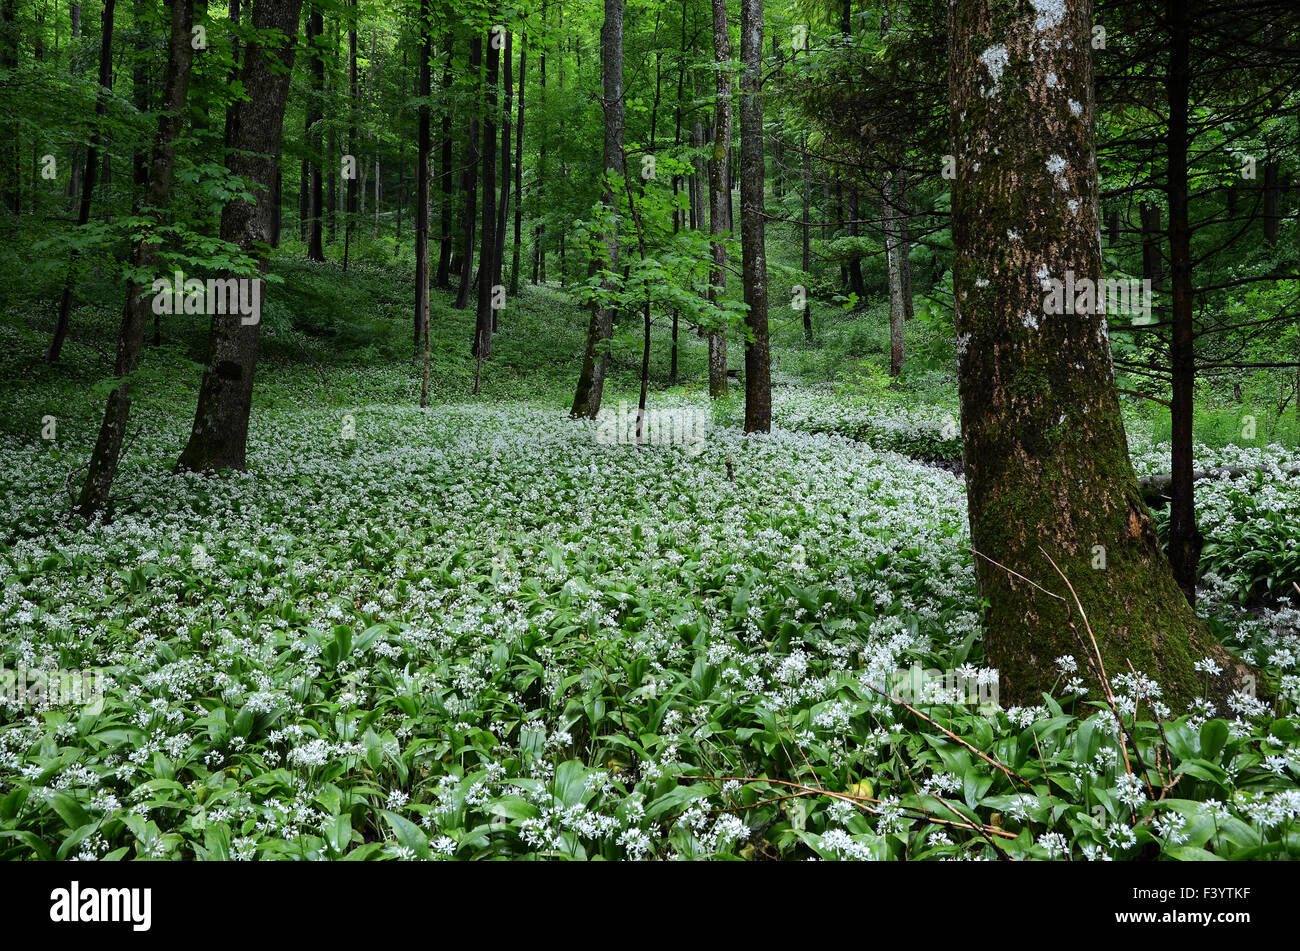 wild garlic in spring forest Stock Photo